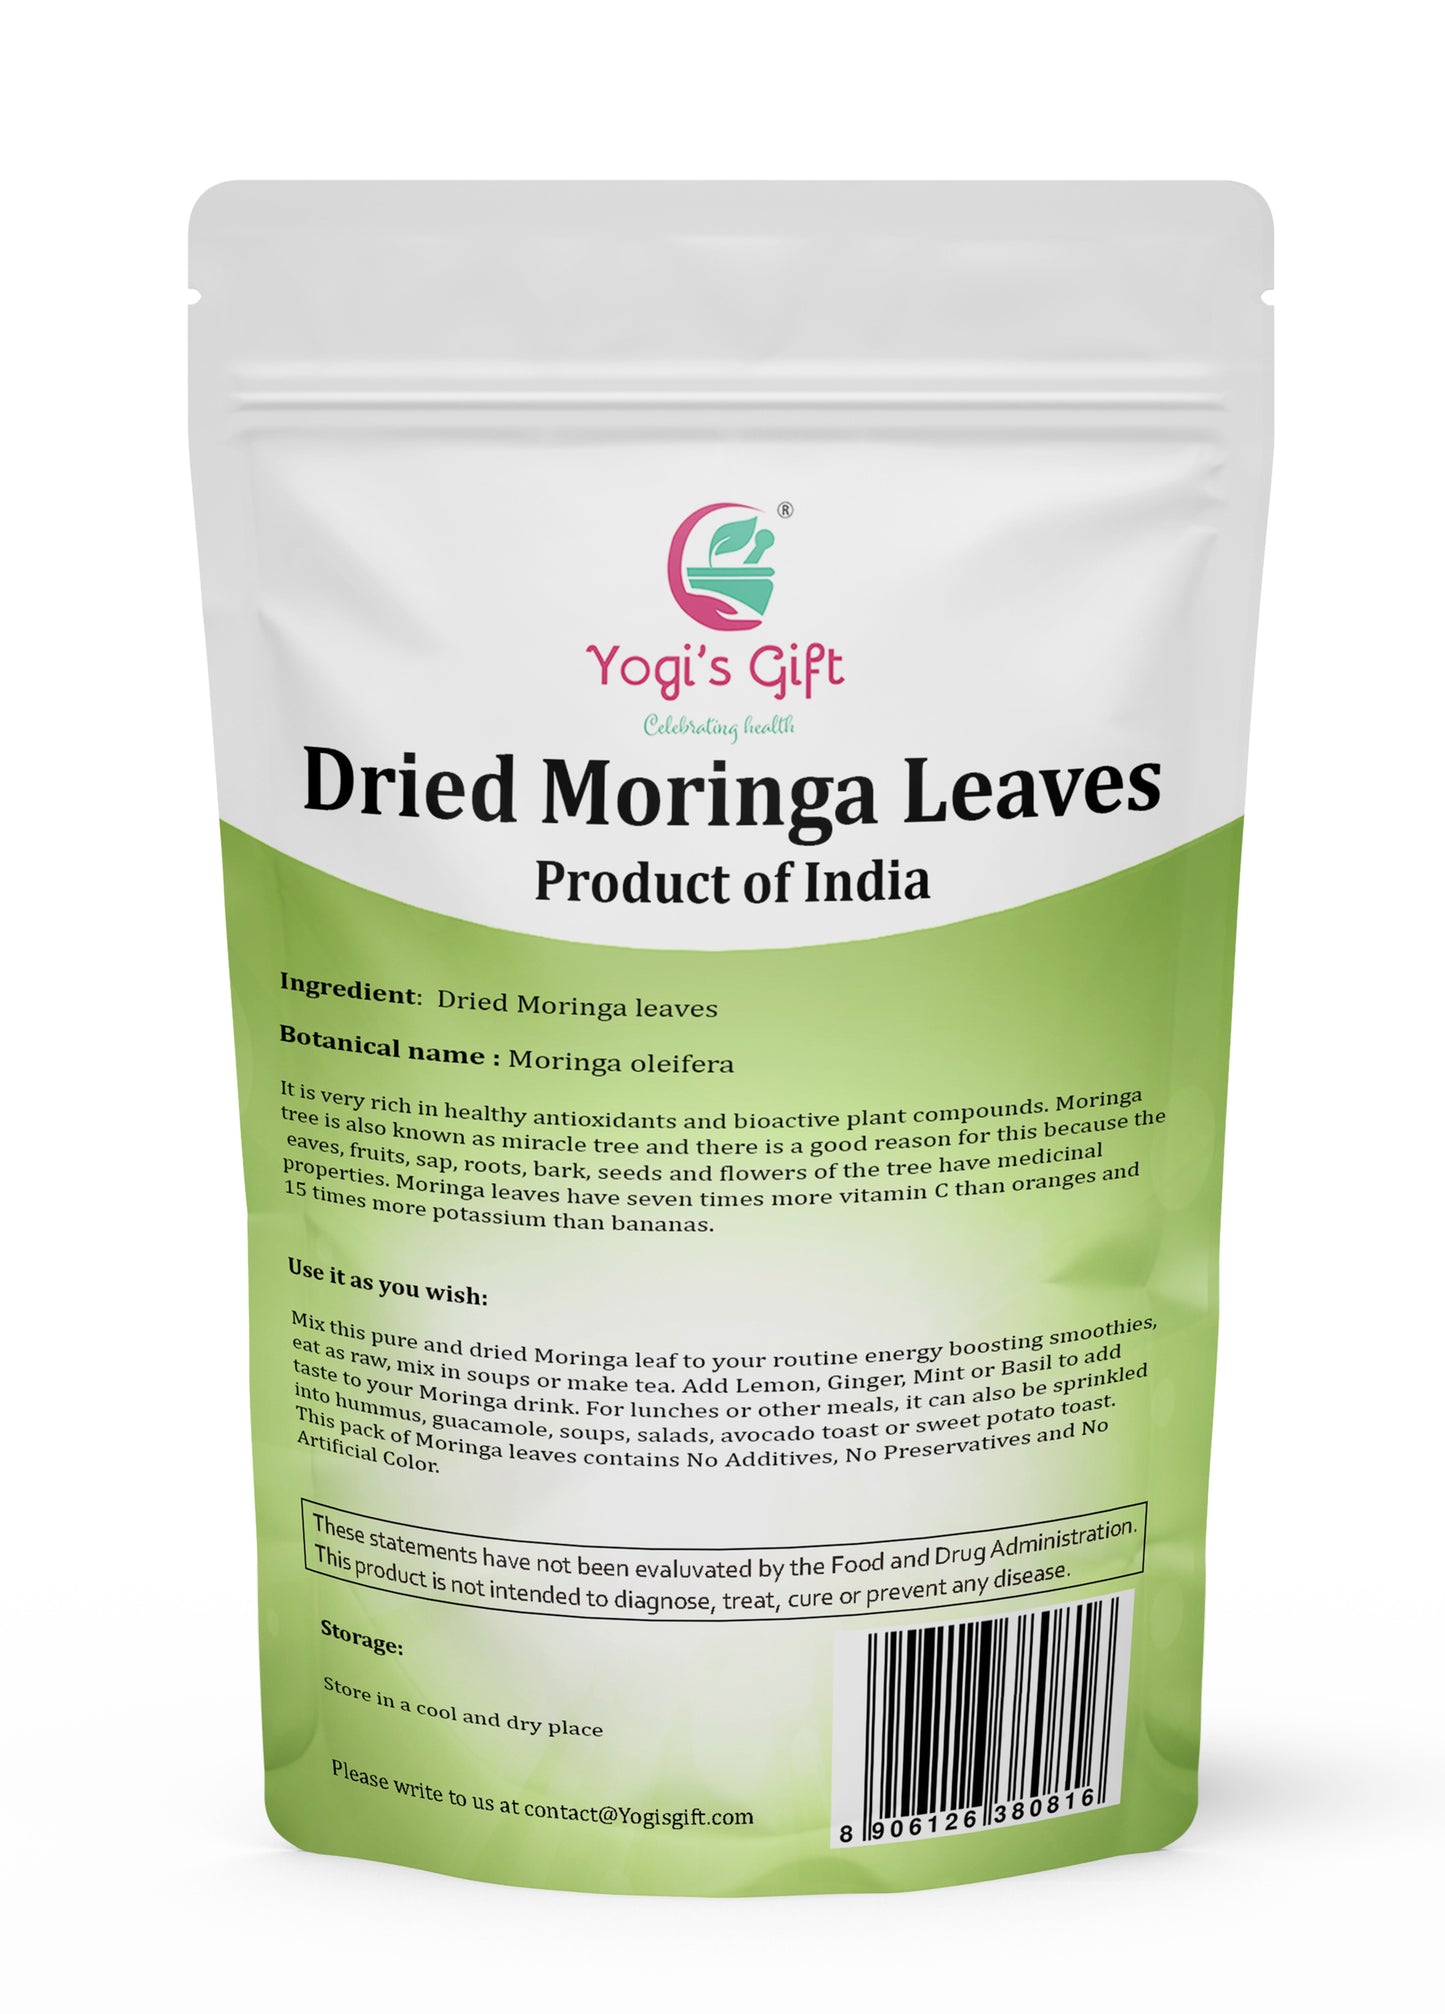 Moringa Leaves Loose 1 LB | Make tea, Springle on Salad, Ground and Use It | 100% Natural Moringa Leaf Only No Stems | Te De Moringa | Yogi's Gift®